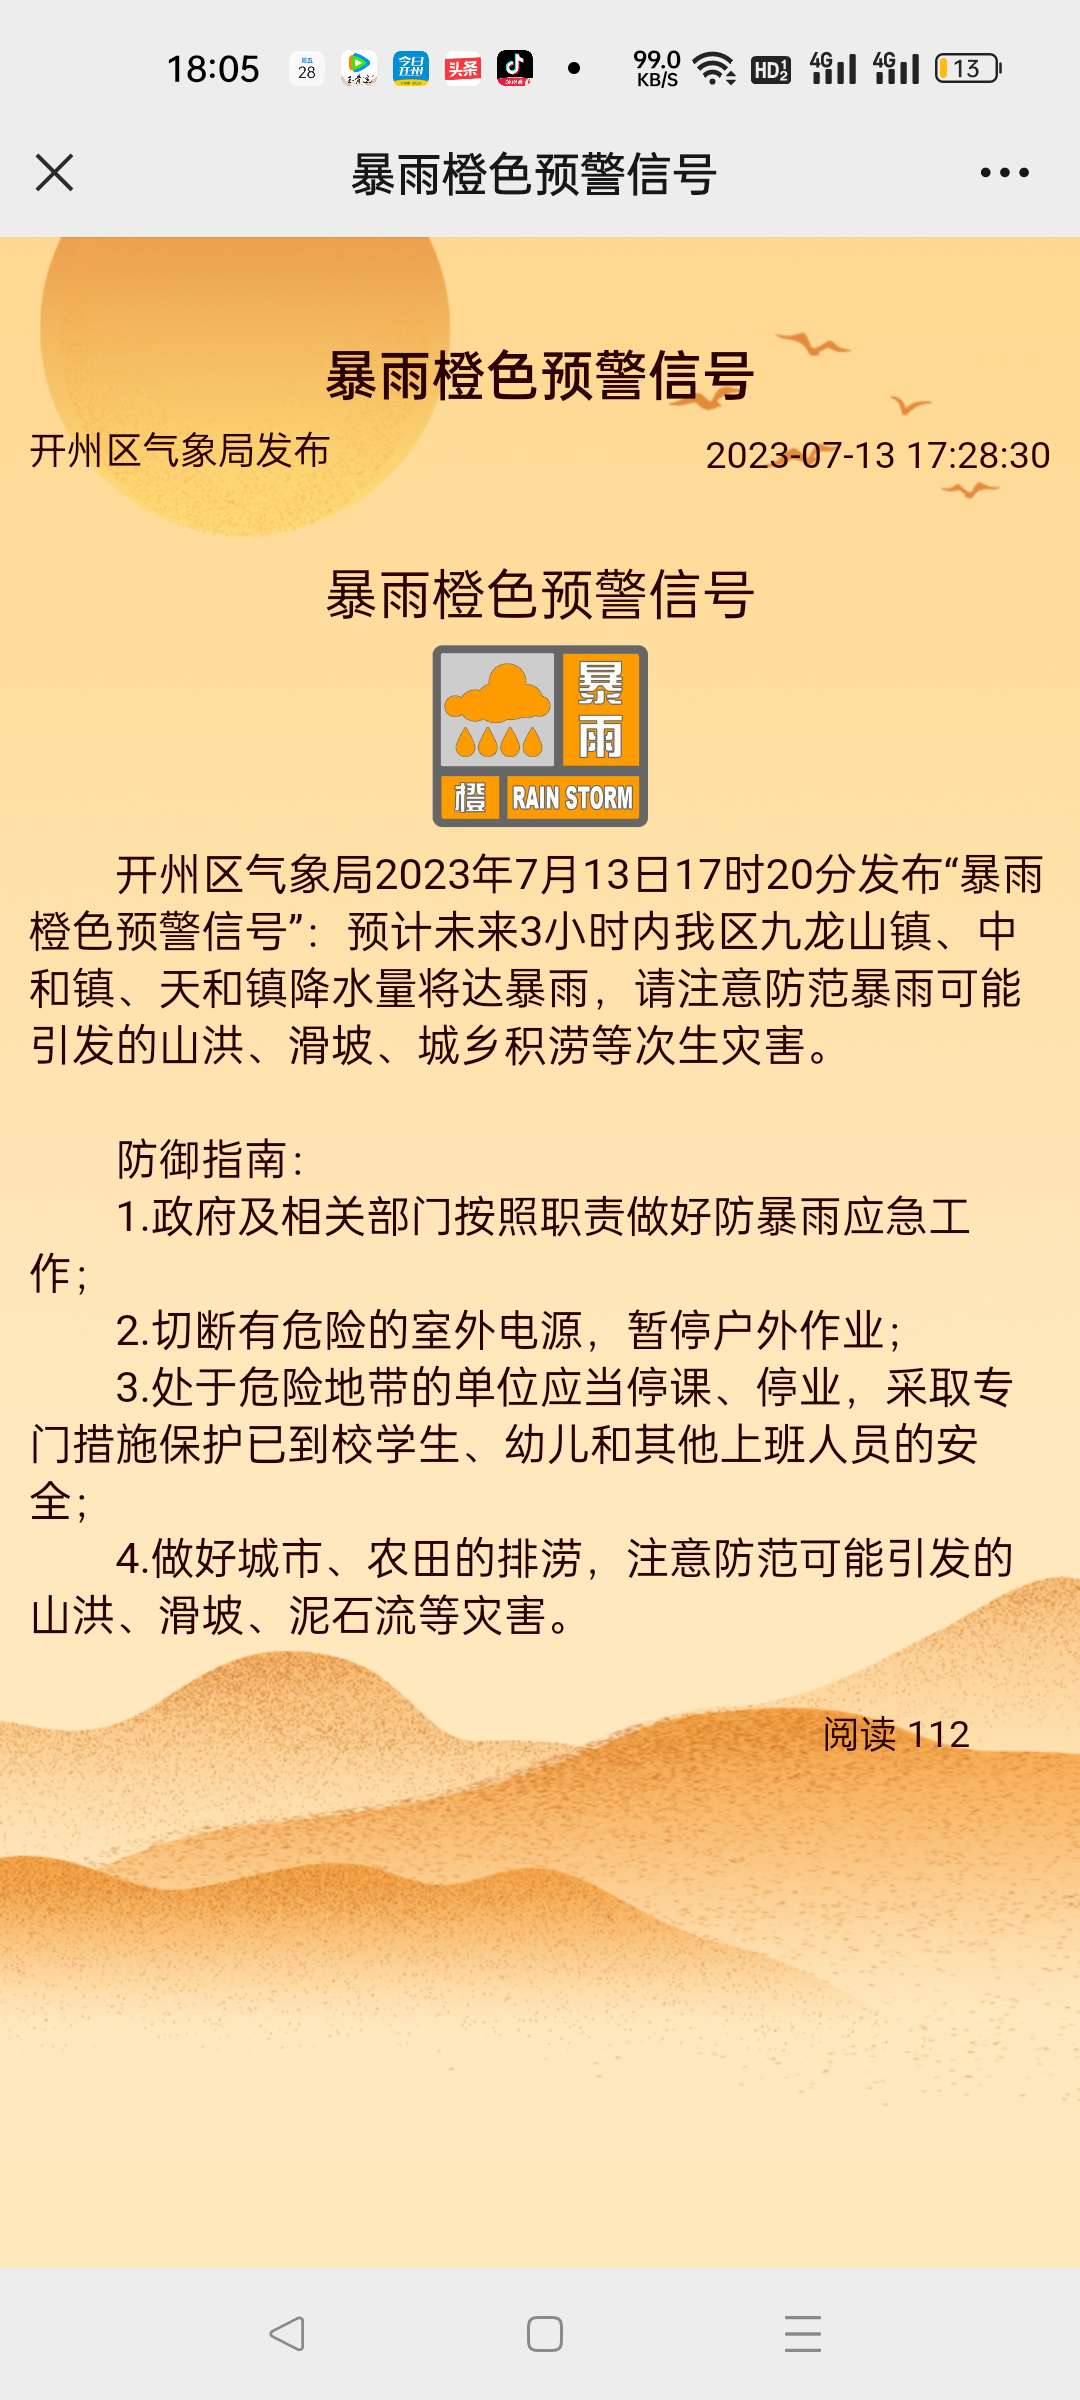 开州区气象局2023年7月13日17时20分发布“暴雨橙色预警信号”|开元体育官方网站(图1)